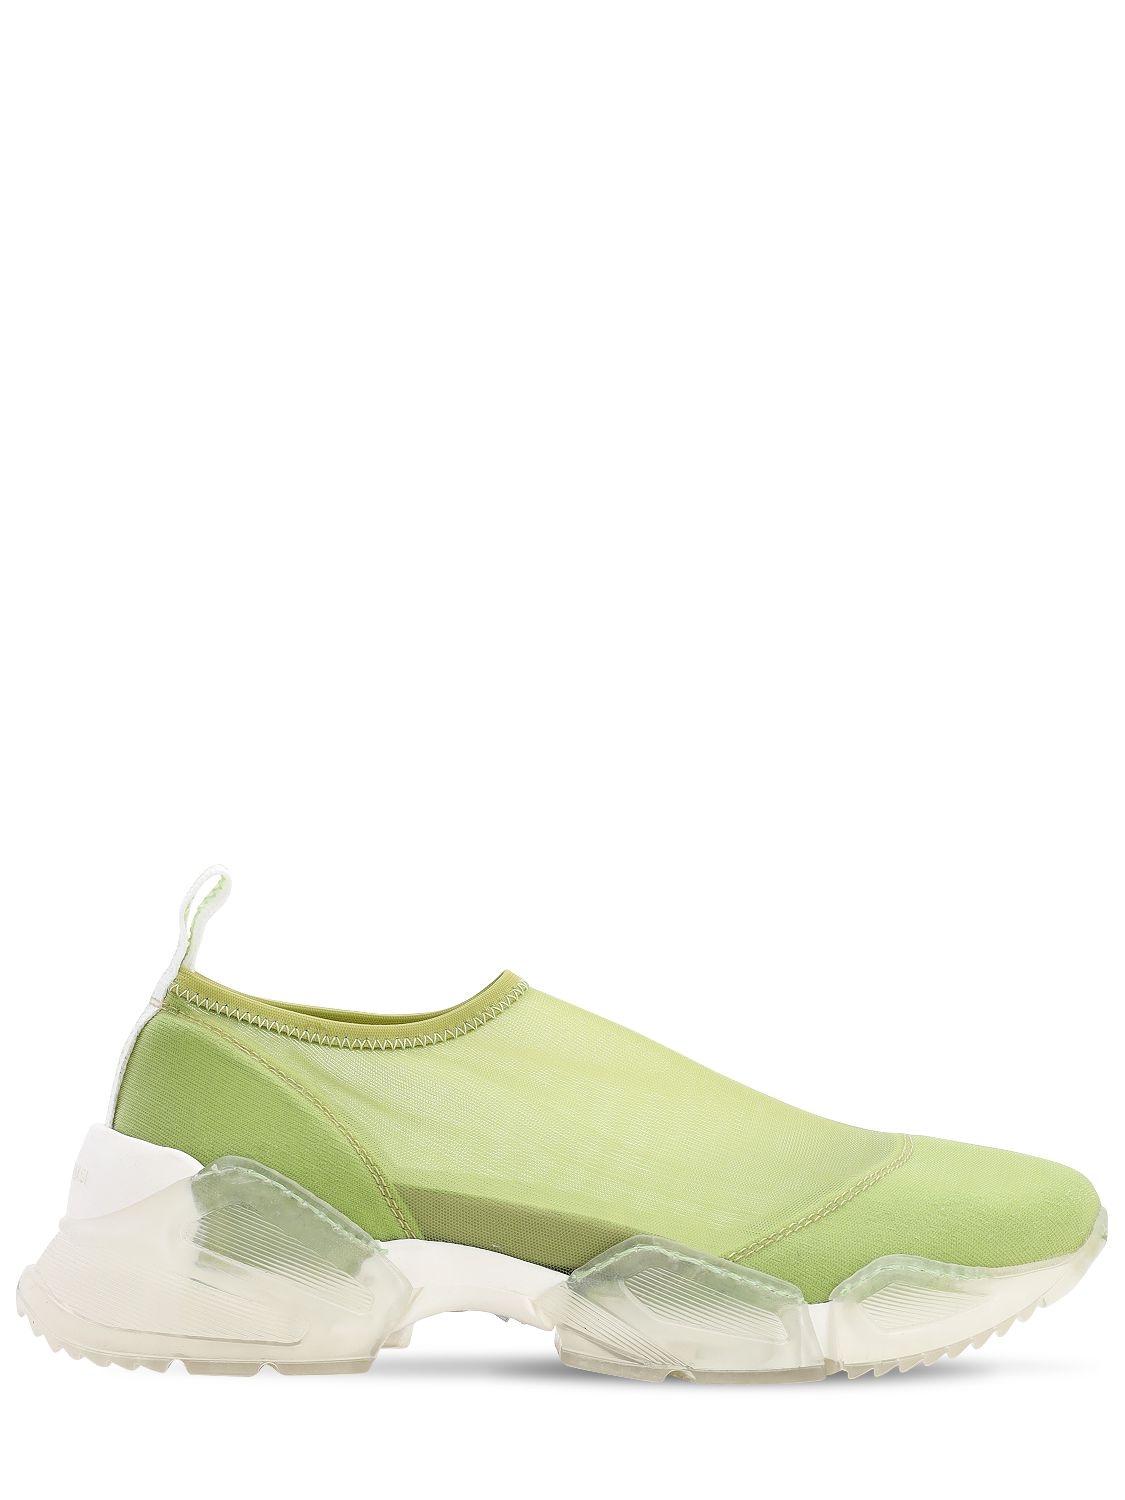 Chiara Biasi 30mm Bianca Mesh Sneakers In Lime Green